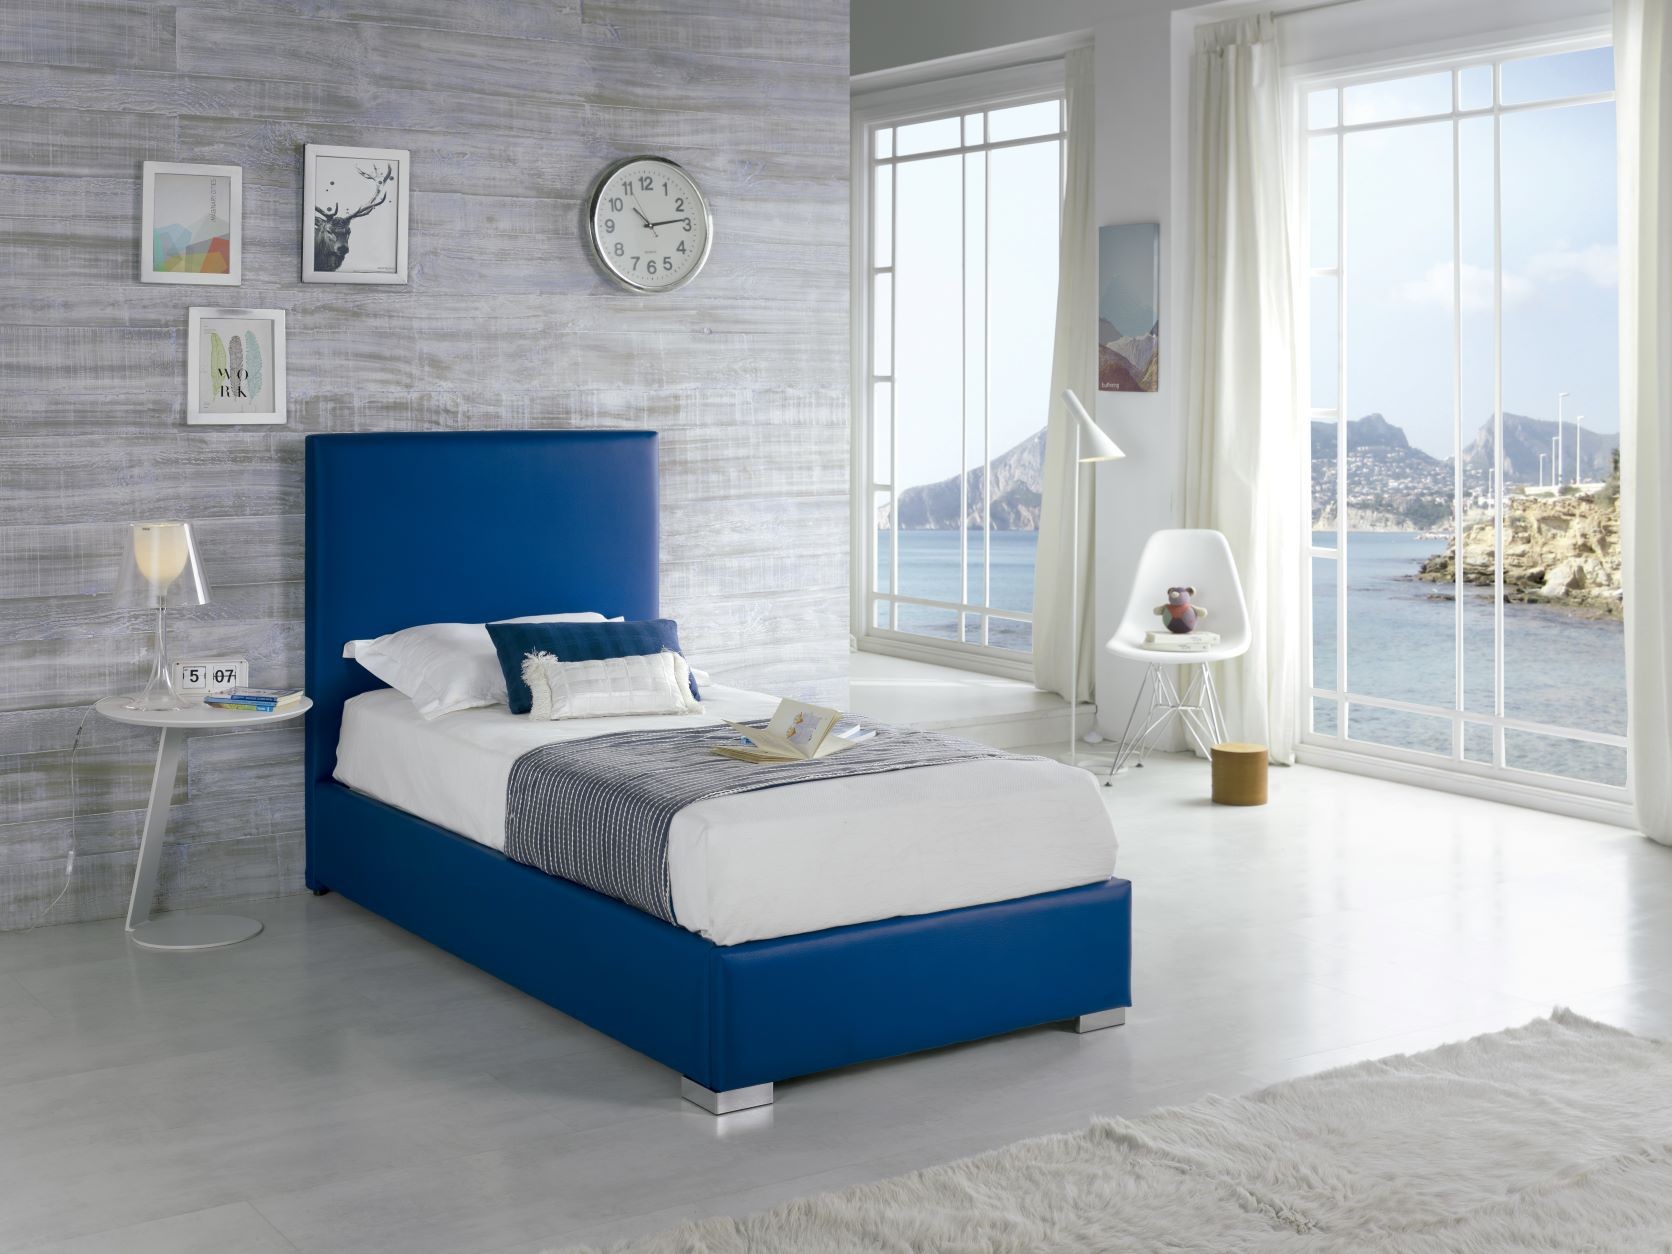 Estila Moderní kožená postel Piccolo s modrým potahem 90-105cm